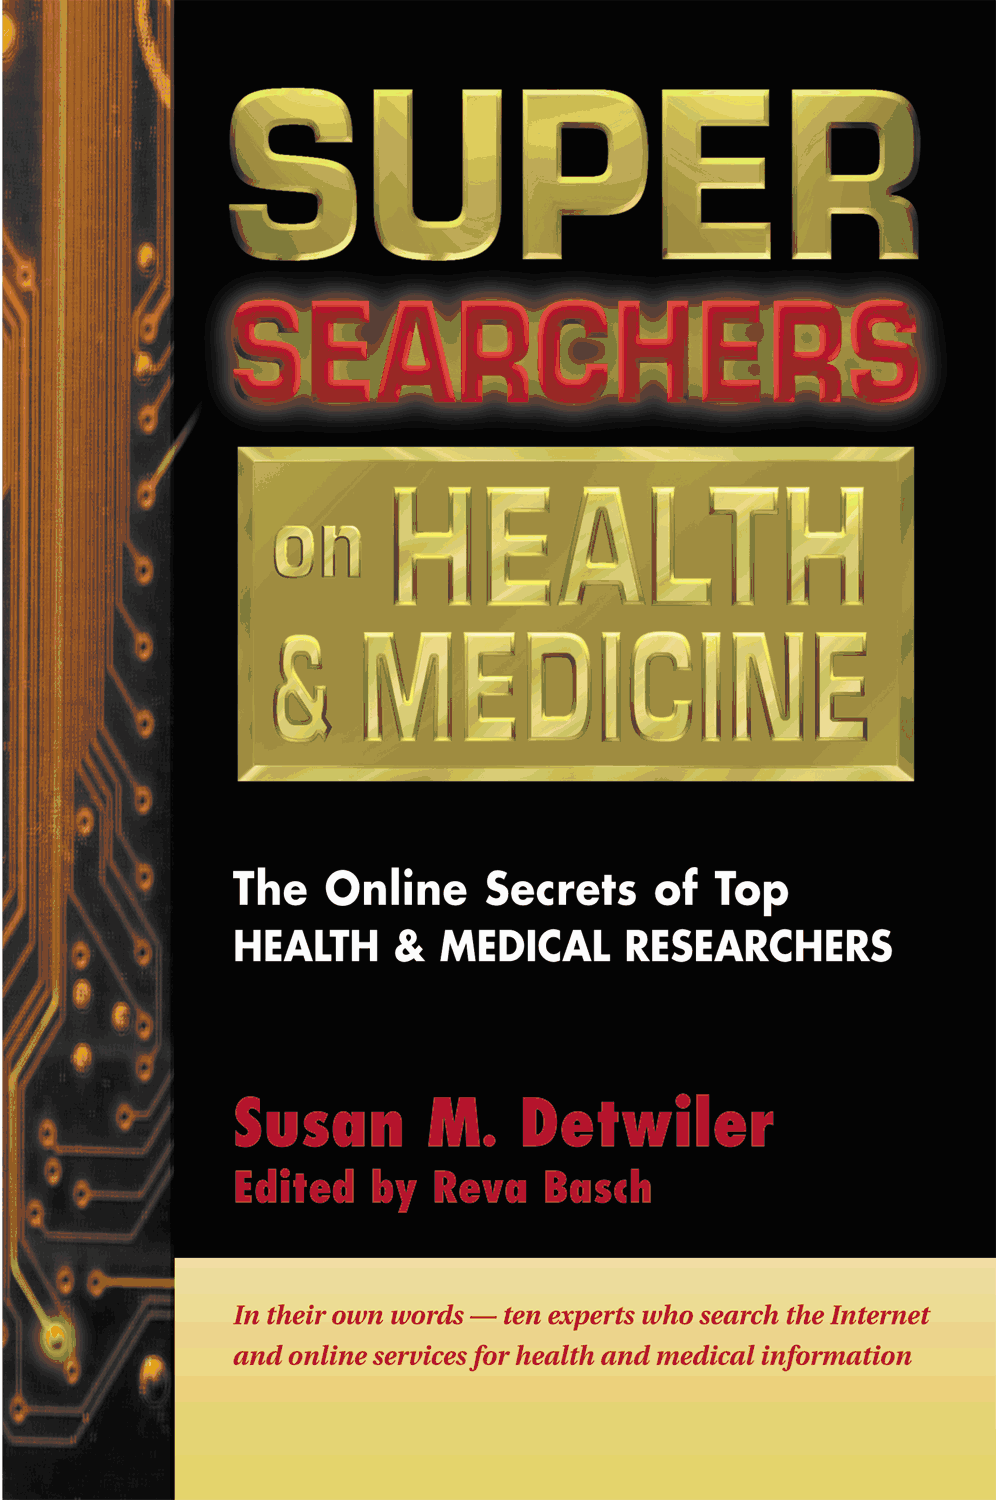 Super Searchers on Health & Medicine